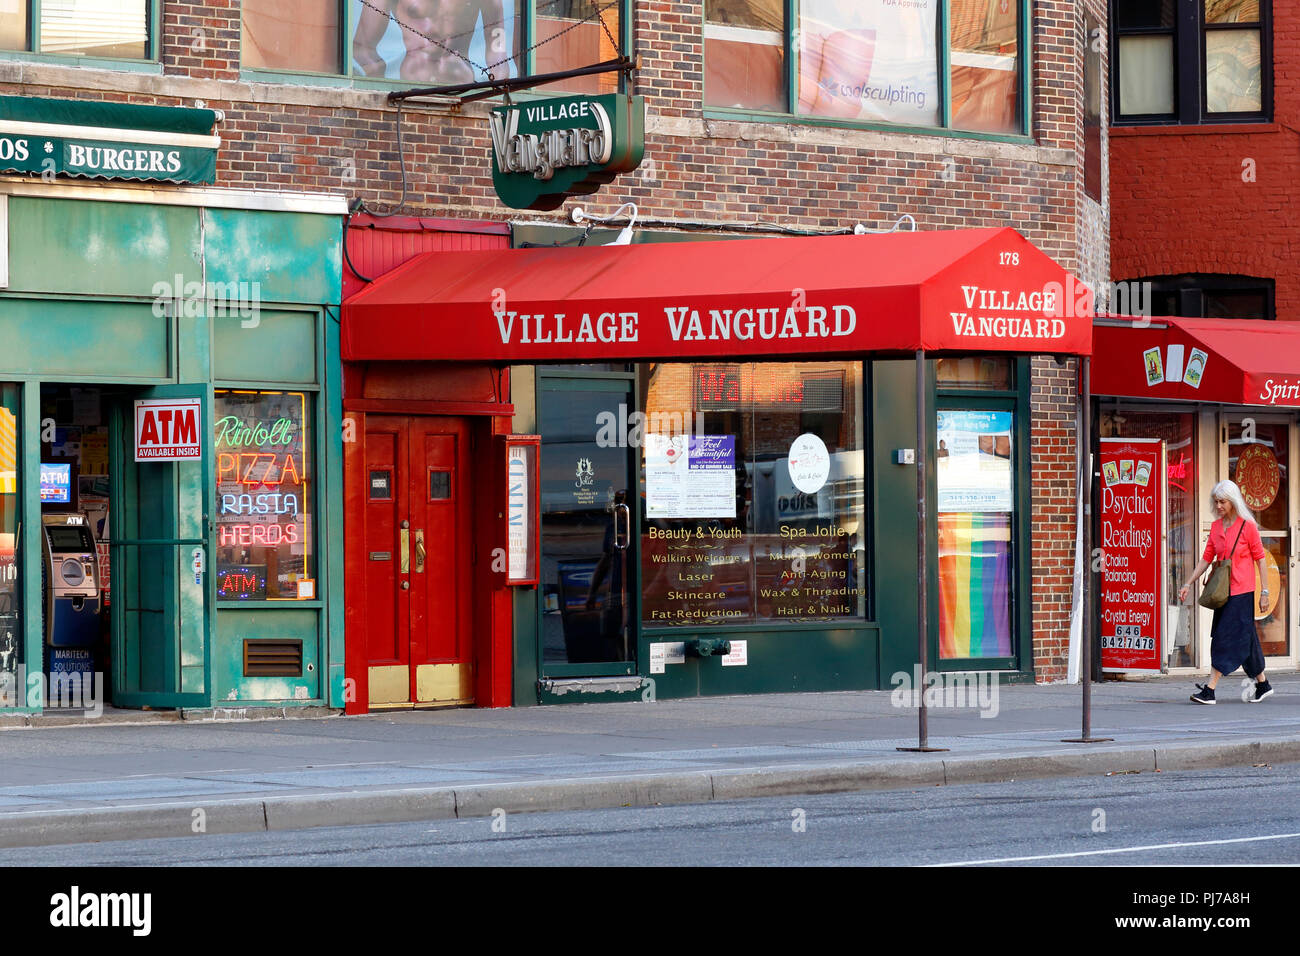 Village Vanguard 178, Septième Avenue South, New York, NY. devanture extérieure d'un club de jazz dans le quartier de Greenwich Village de Manhattan. Banque D'Images